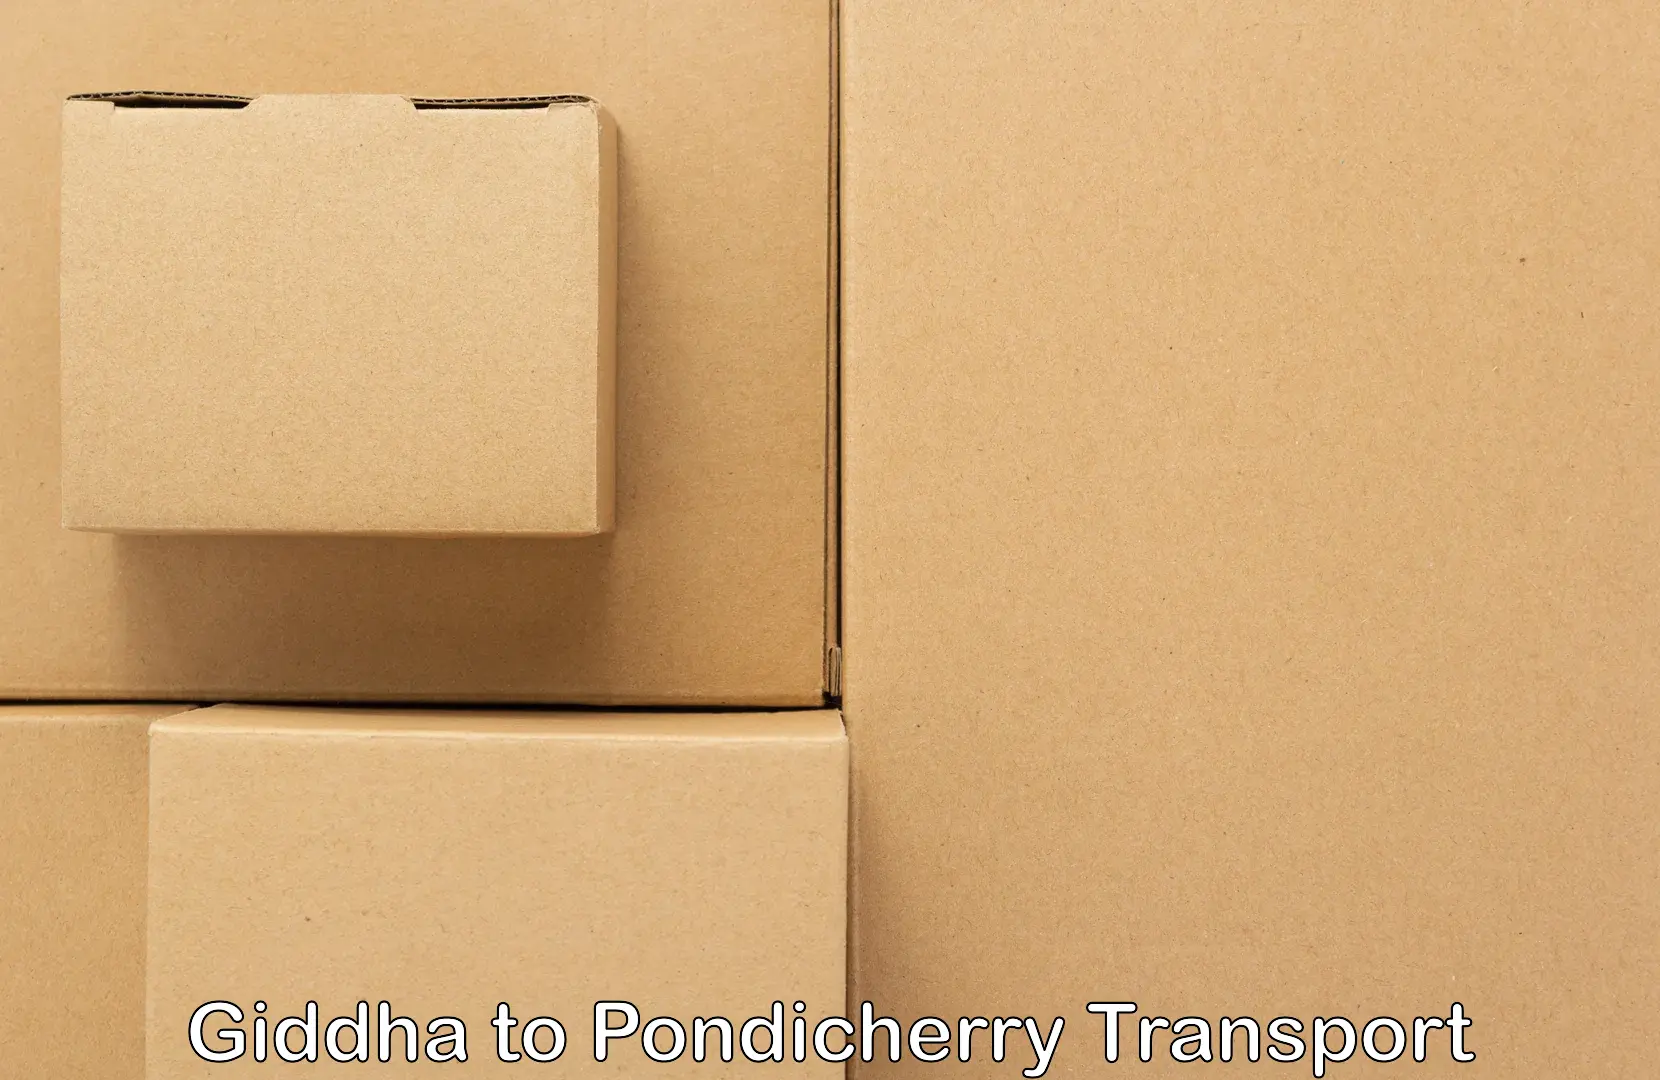 Cargo transport services Giddha to Pondicherry